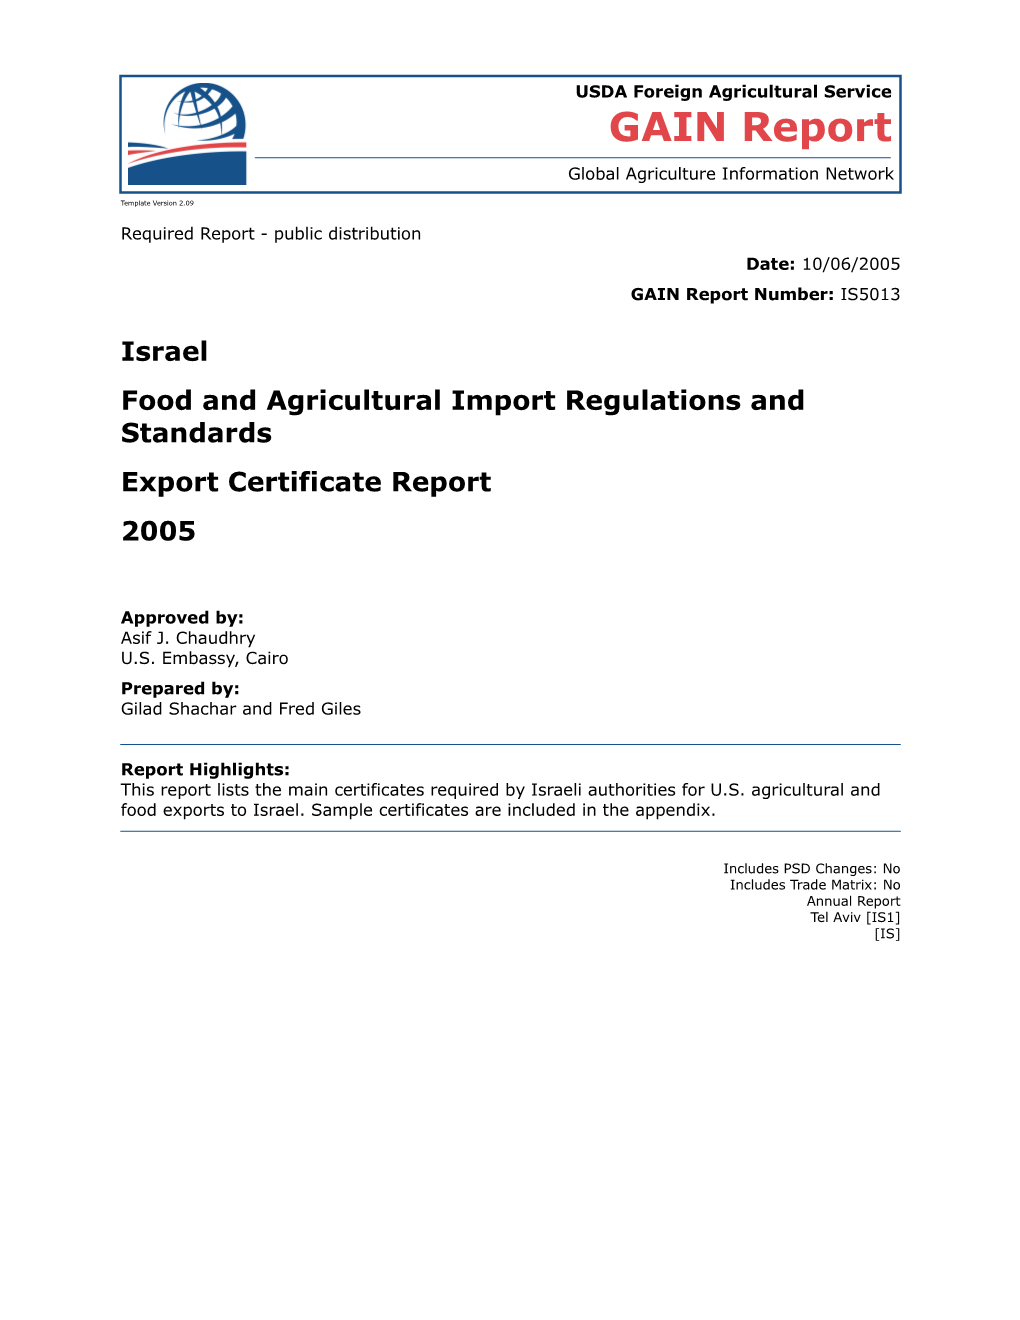 Export Certificate Report 2005 New